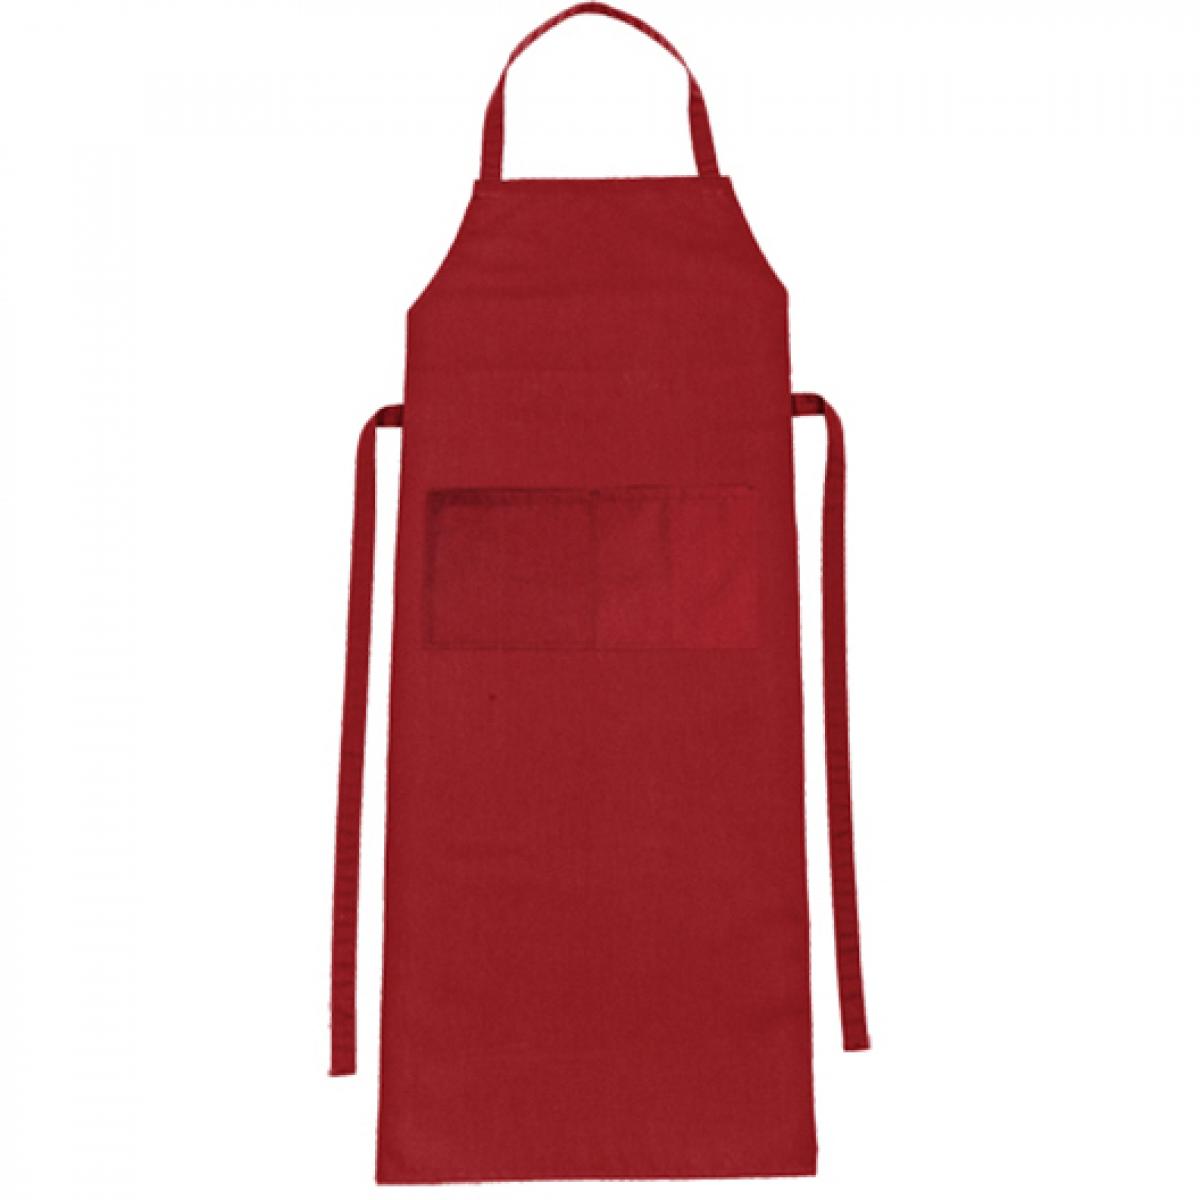 Hersteller: CG Workwear Herstellernummer: 01146-01 Artikelbezeichnung: Latzschürze Verona Classic Bag 90 x 75 cm Farbe: Regency Red